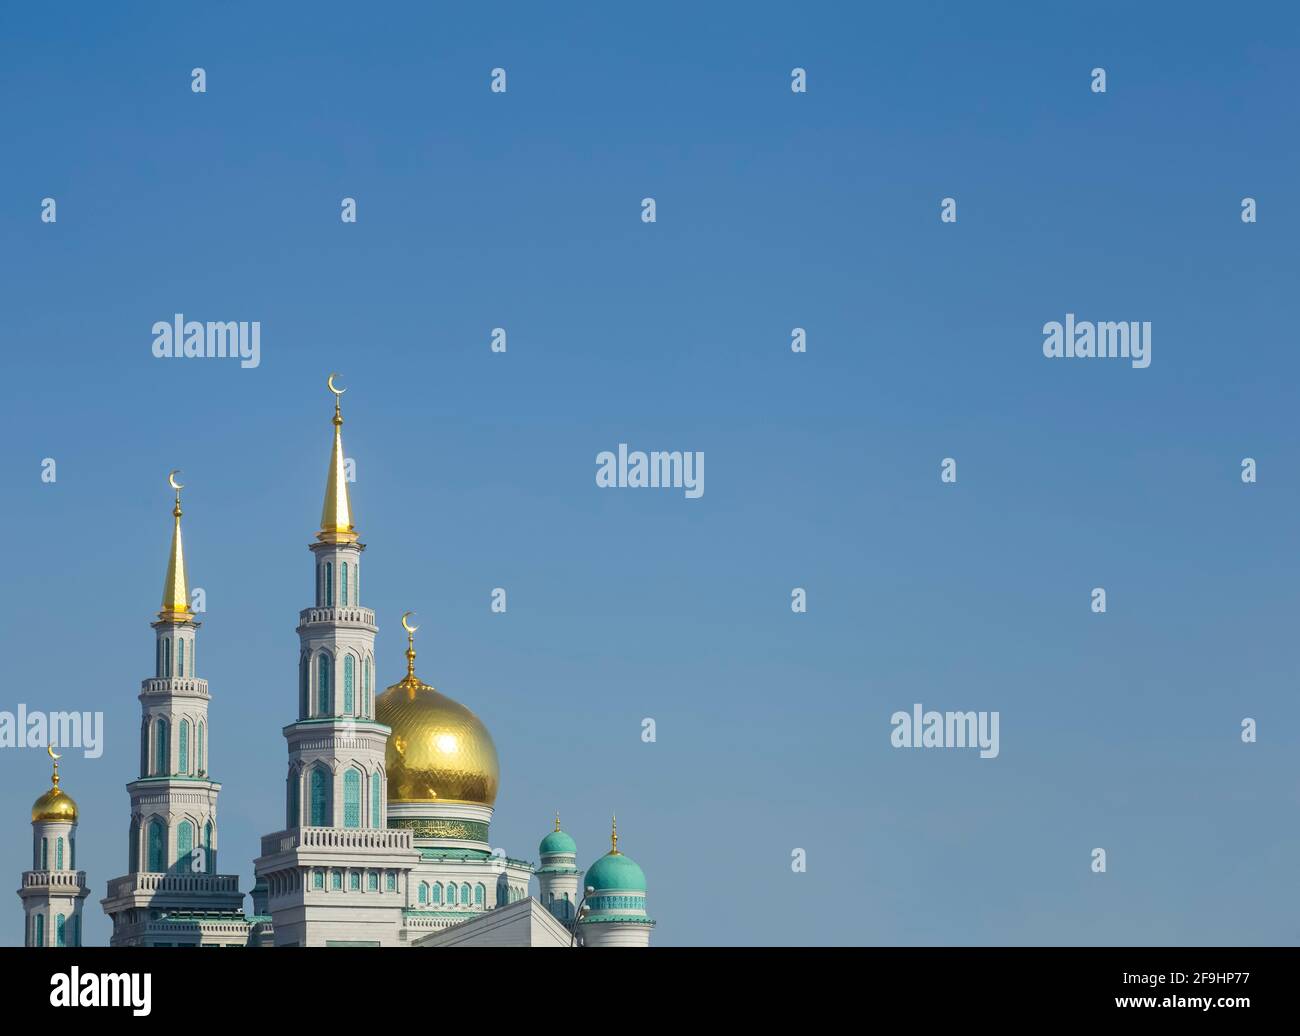 Mosquée islamique sur fond de ciel bleu. La principale cathédrale mosquée des musulmans à Moscou en Russie. Islam, concept de ramadan. Photo de haute qualité Banque D'Images